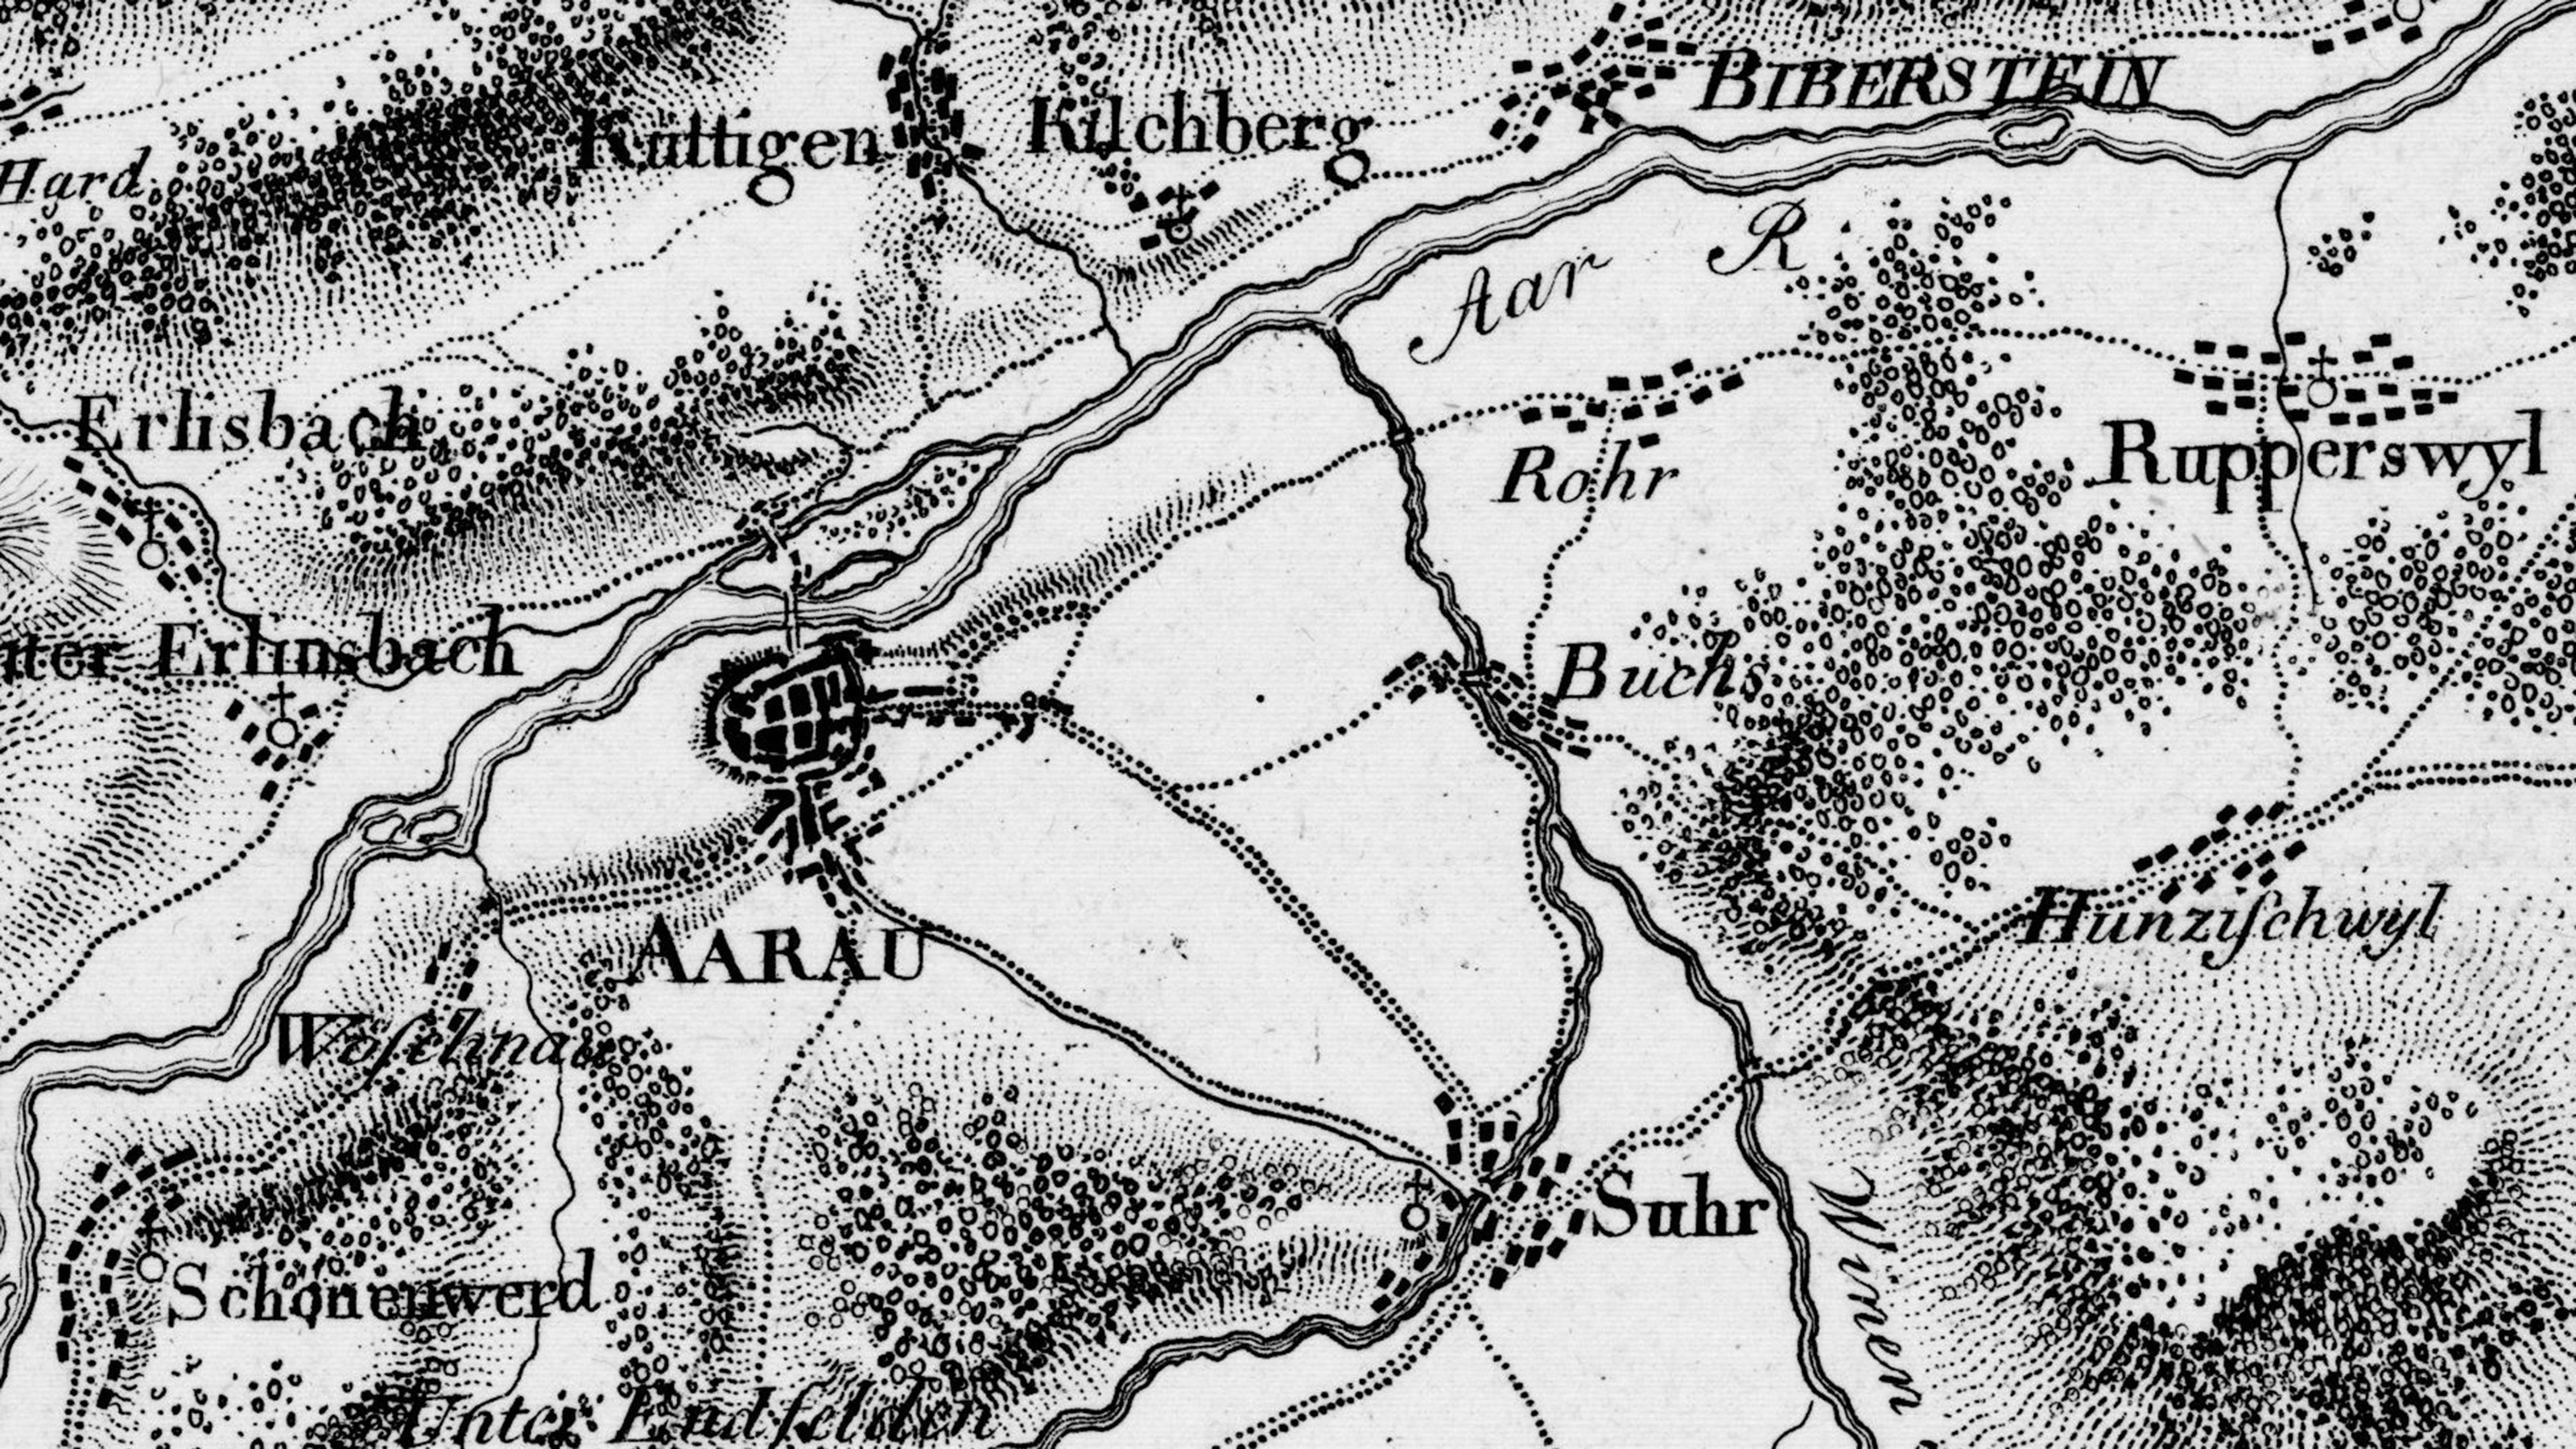 Die Gegend von Aarau auf Blatt 2 des Atlas Suisse von 1800.